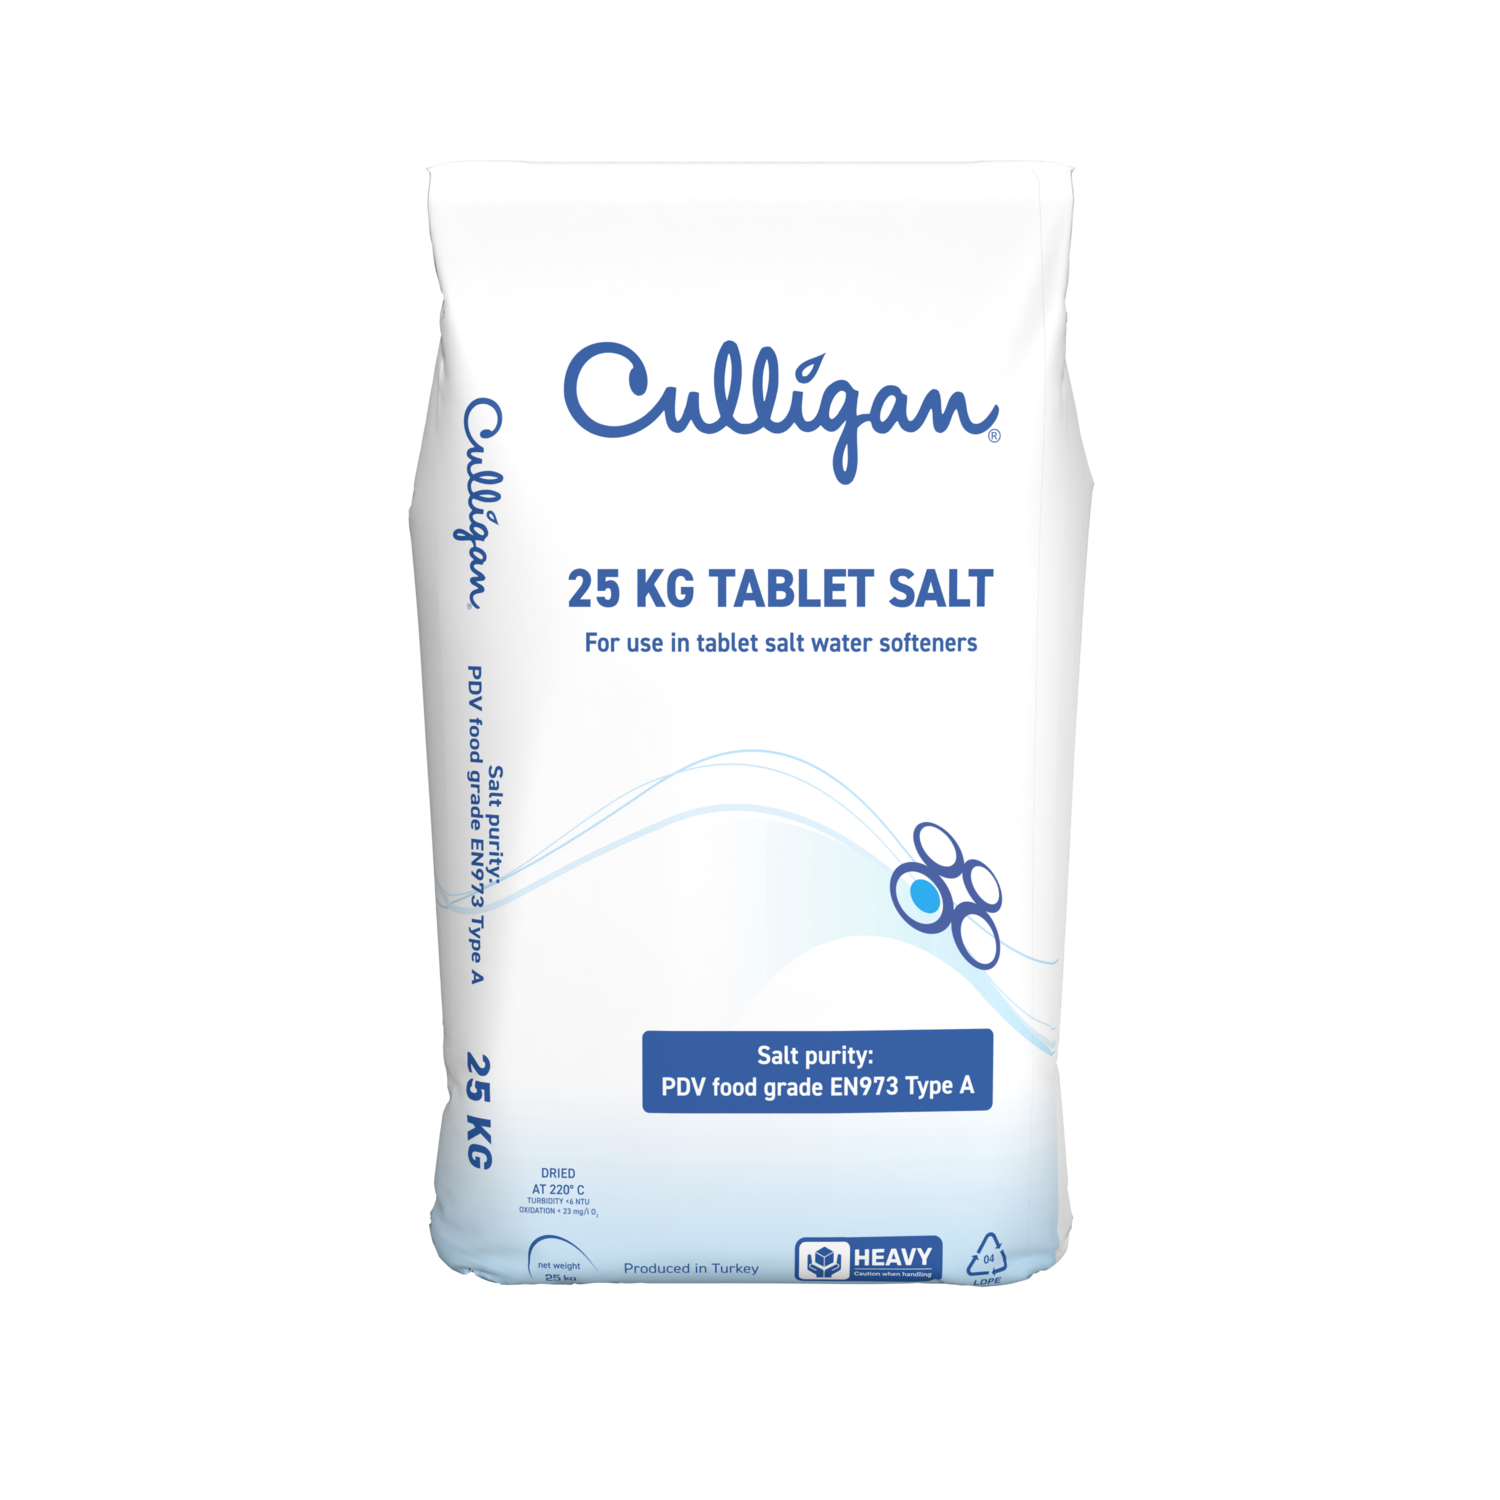 Tablet Salt 25kg - 2 packs delivered